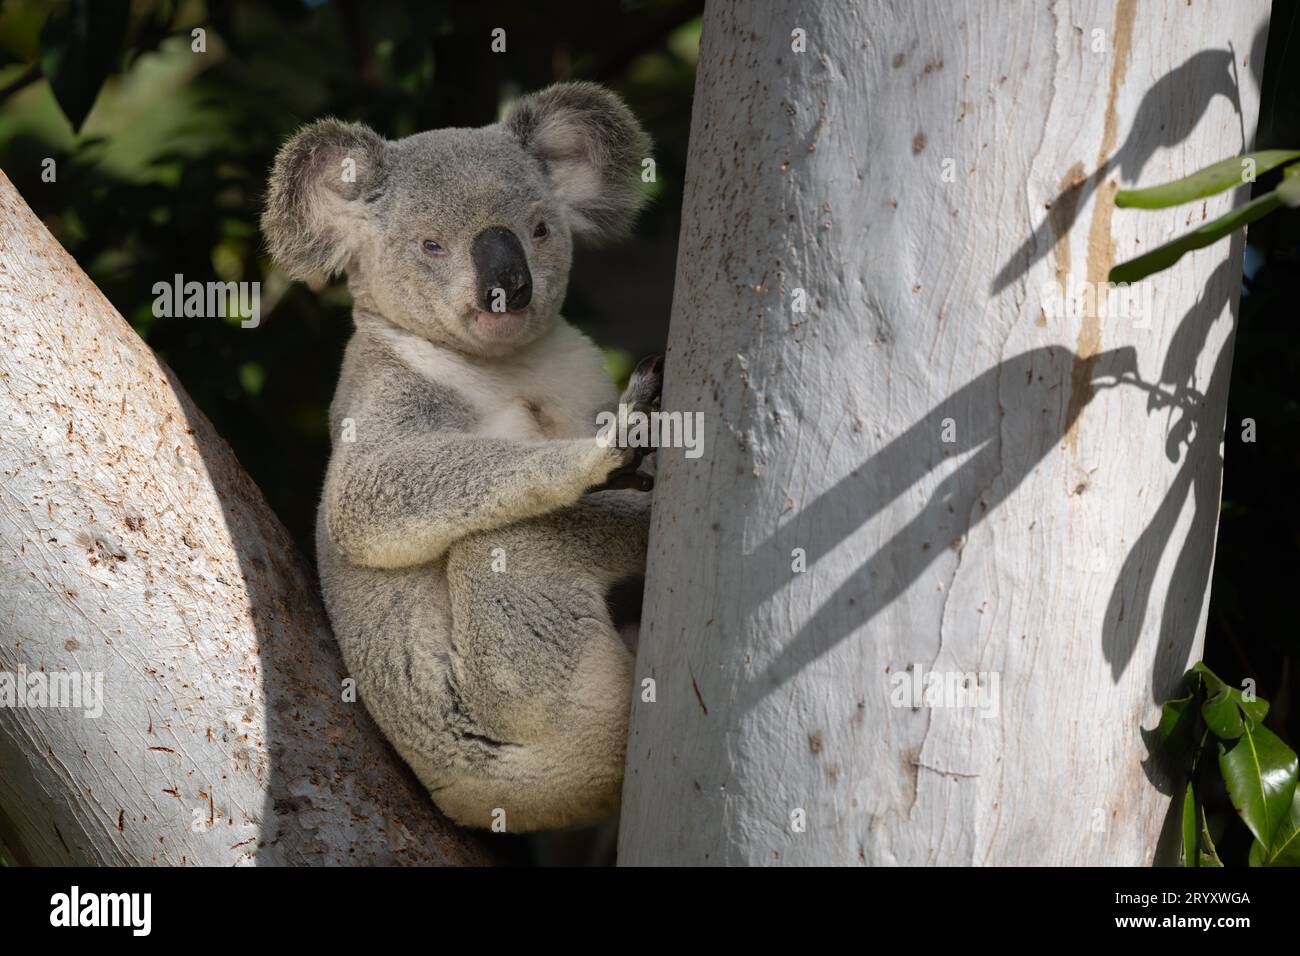 Un grand koala mâle est assis paisiblement dans la fourche d'un grand eucalyptus, regardant la caméra, avant de remonter le tronc pour se nourrir. Banque D'Images